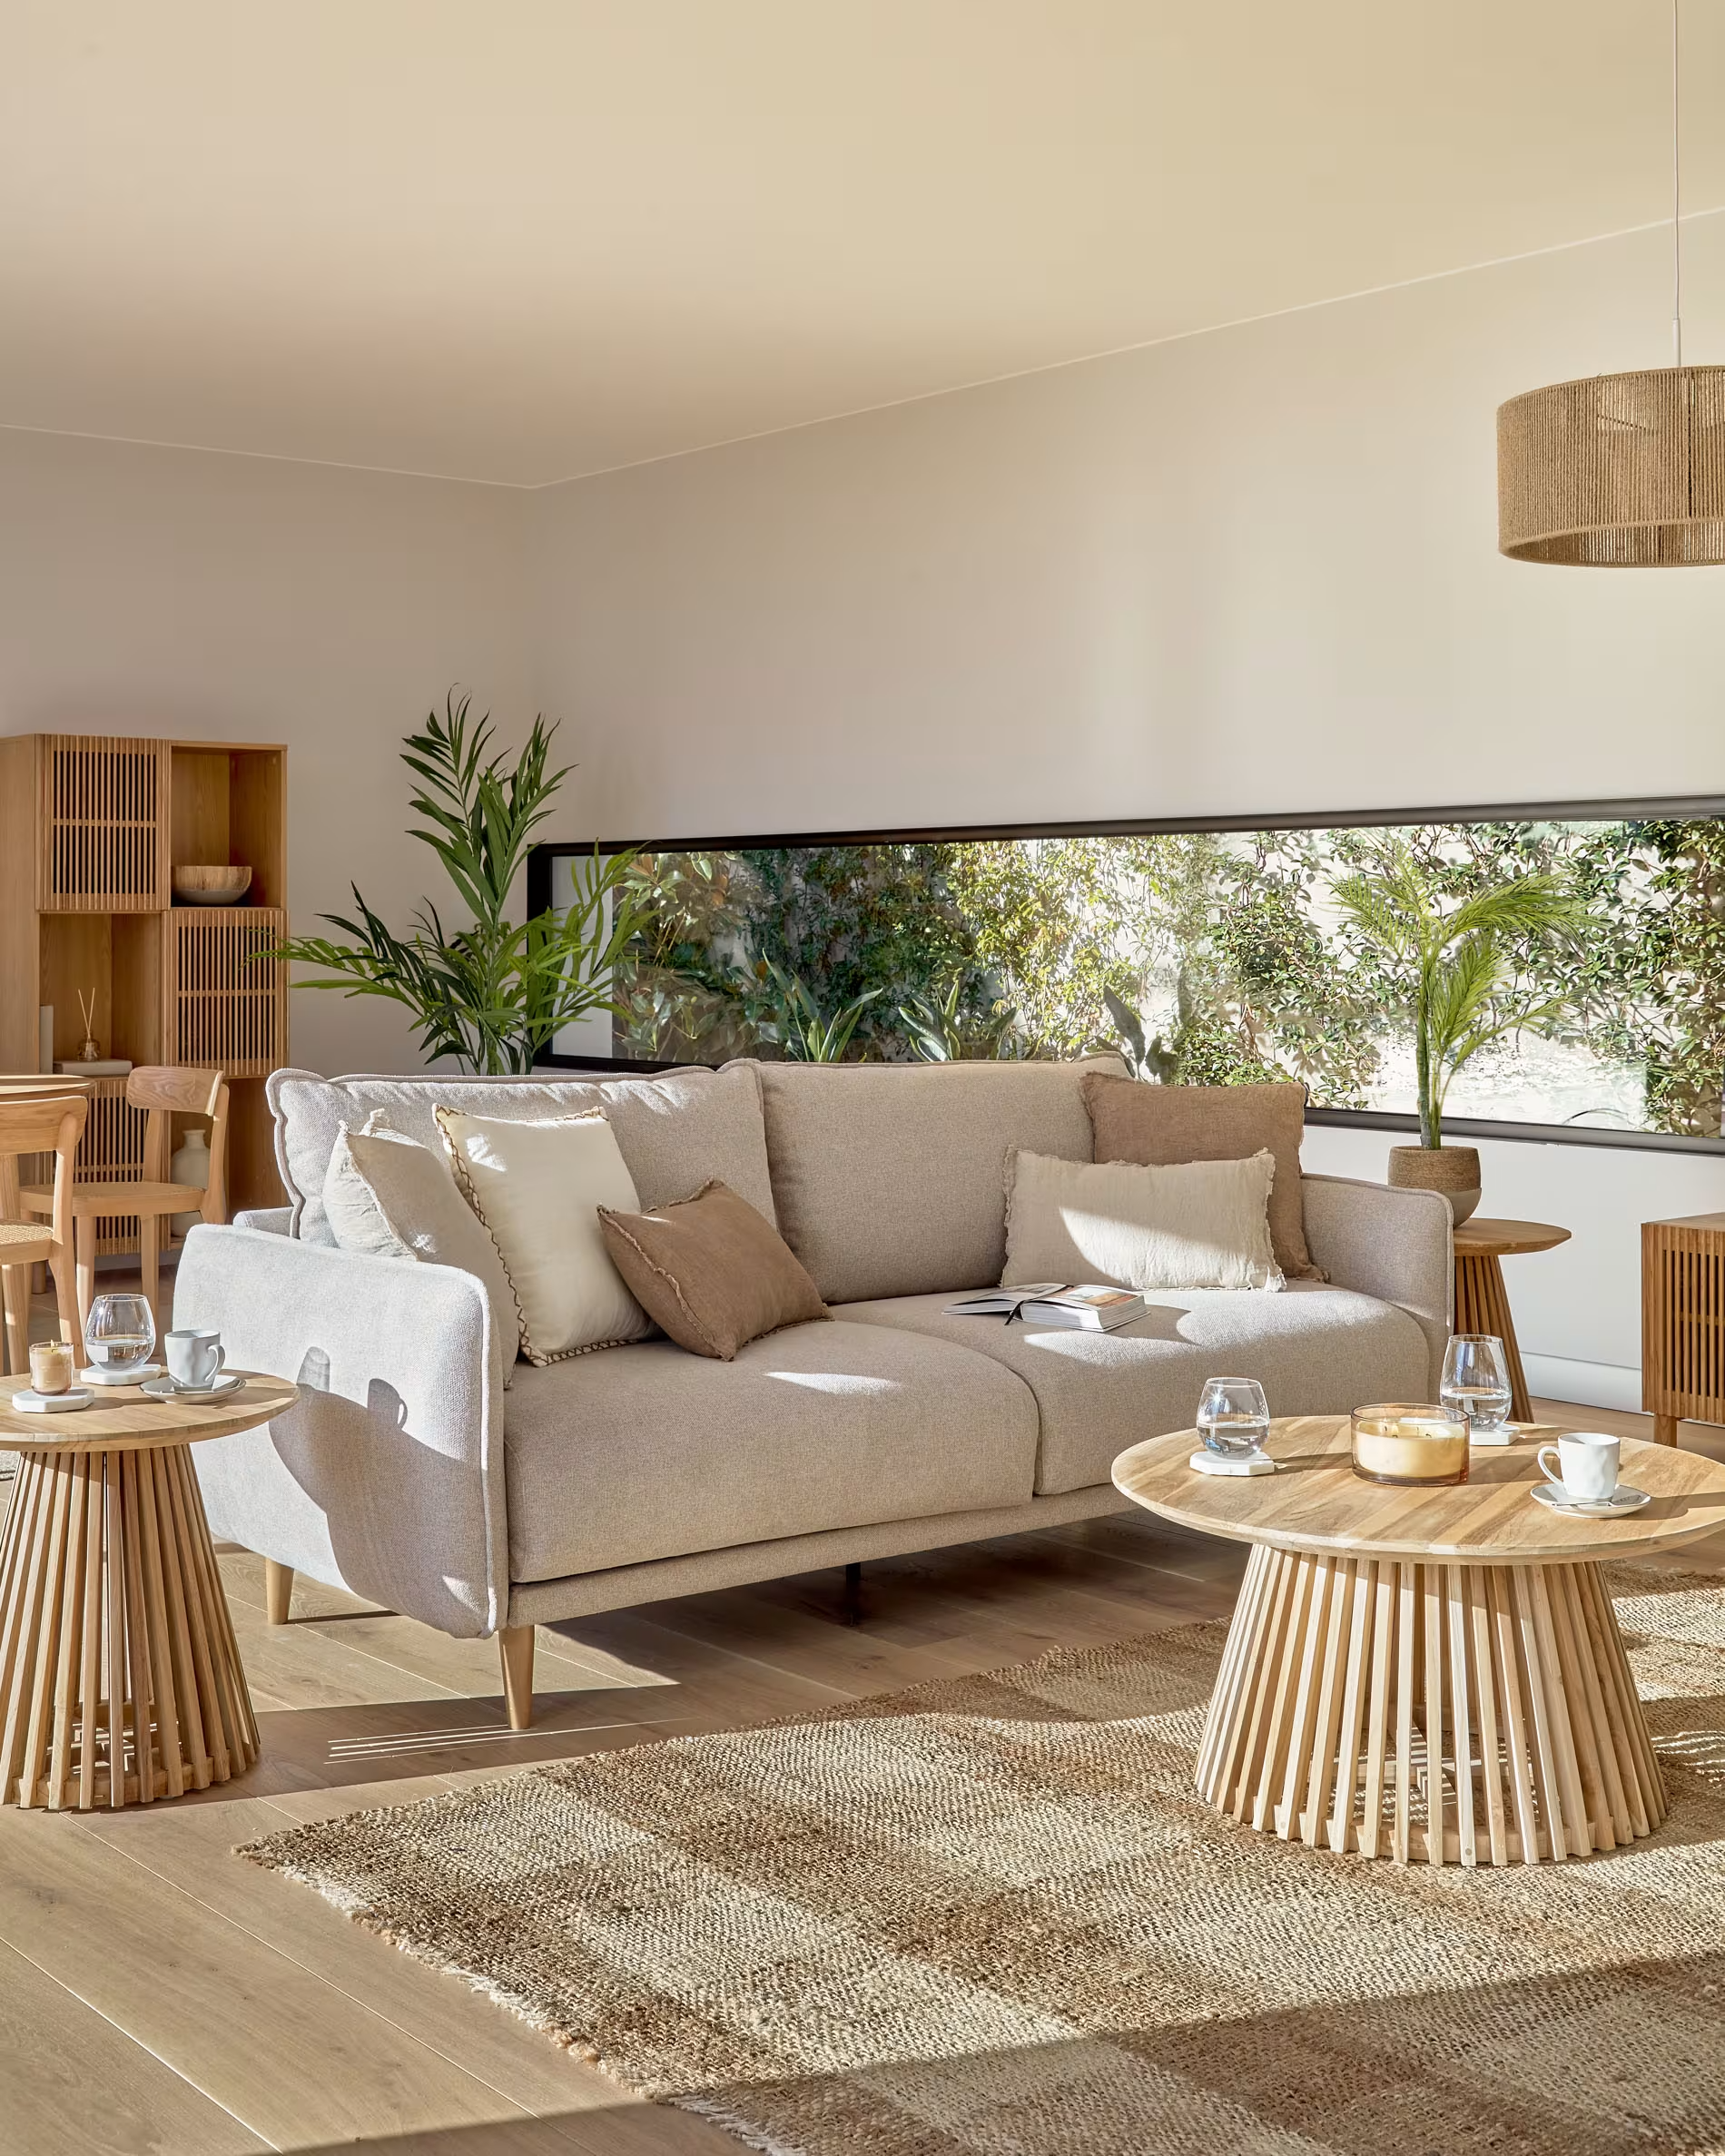 Salón nórdico luminoso con sofá beige y mesa de centro de madera rústica que combina con la alfombra del mismo tono, pero con textura.